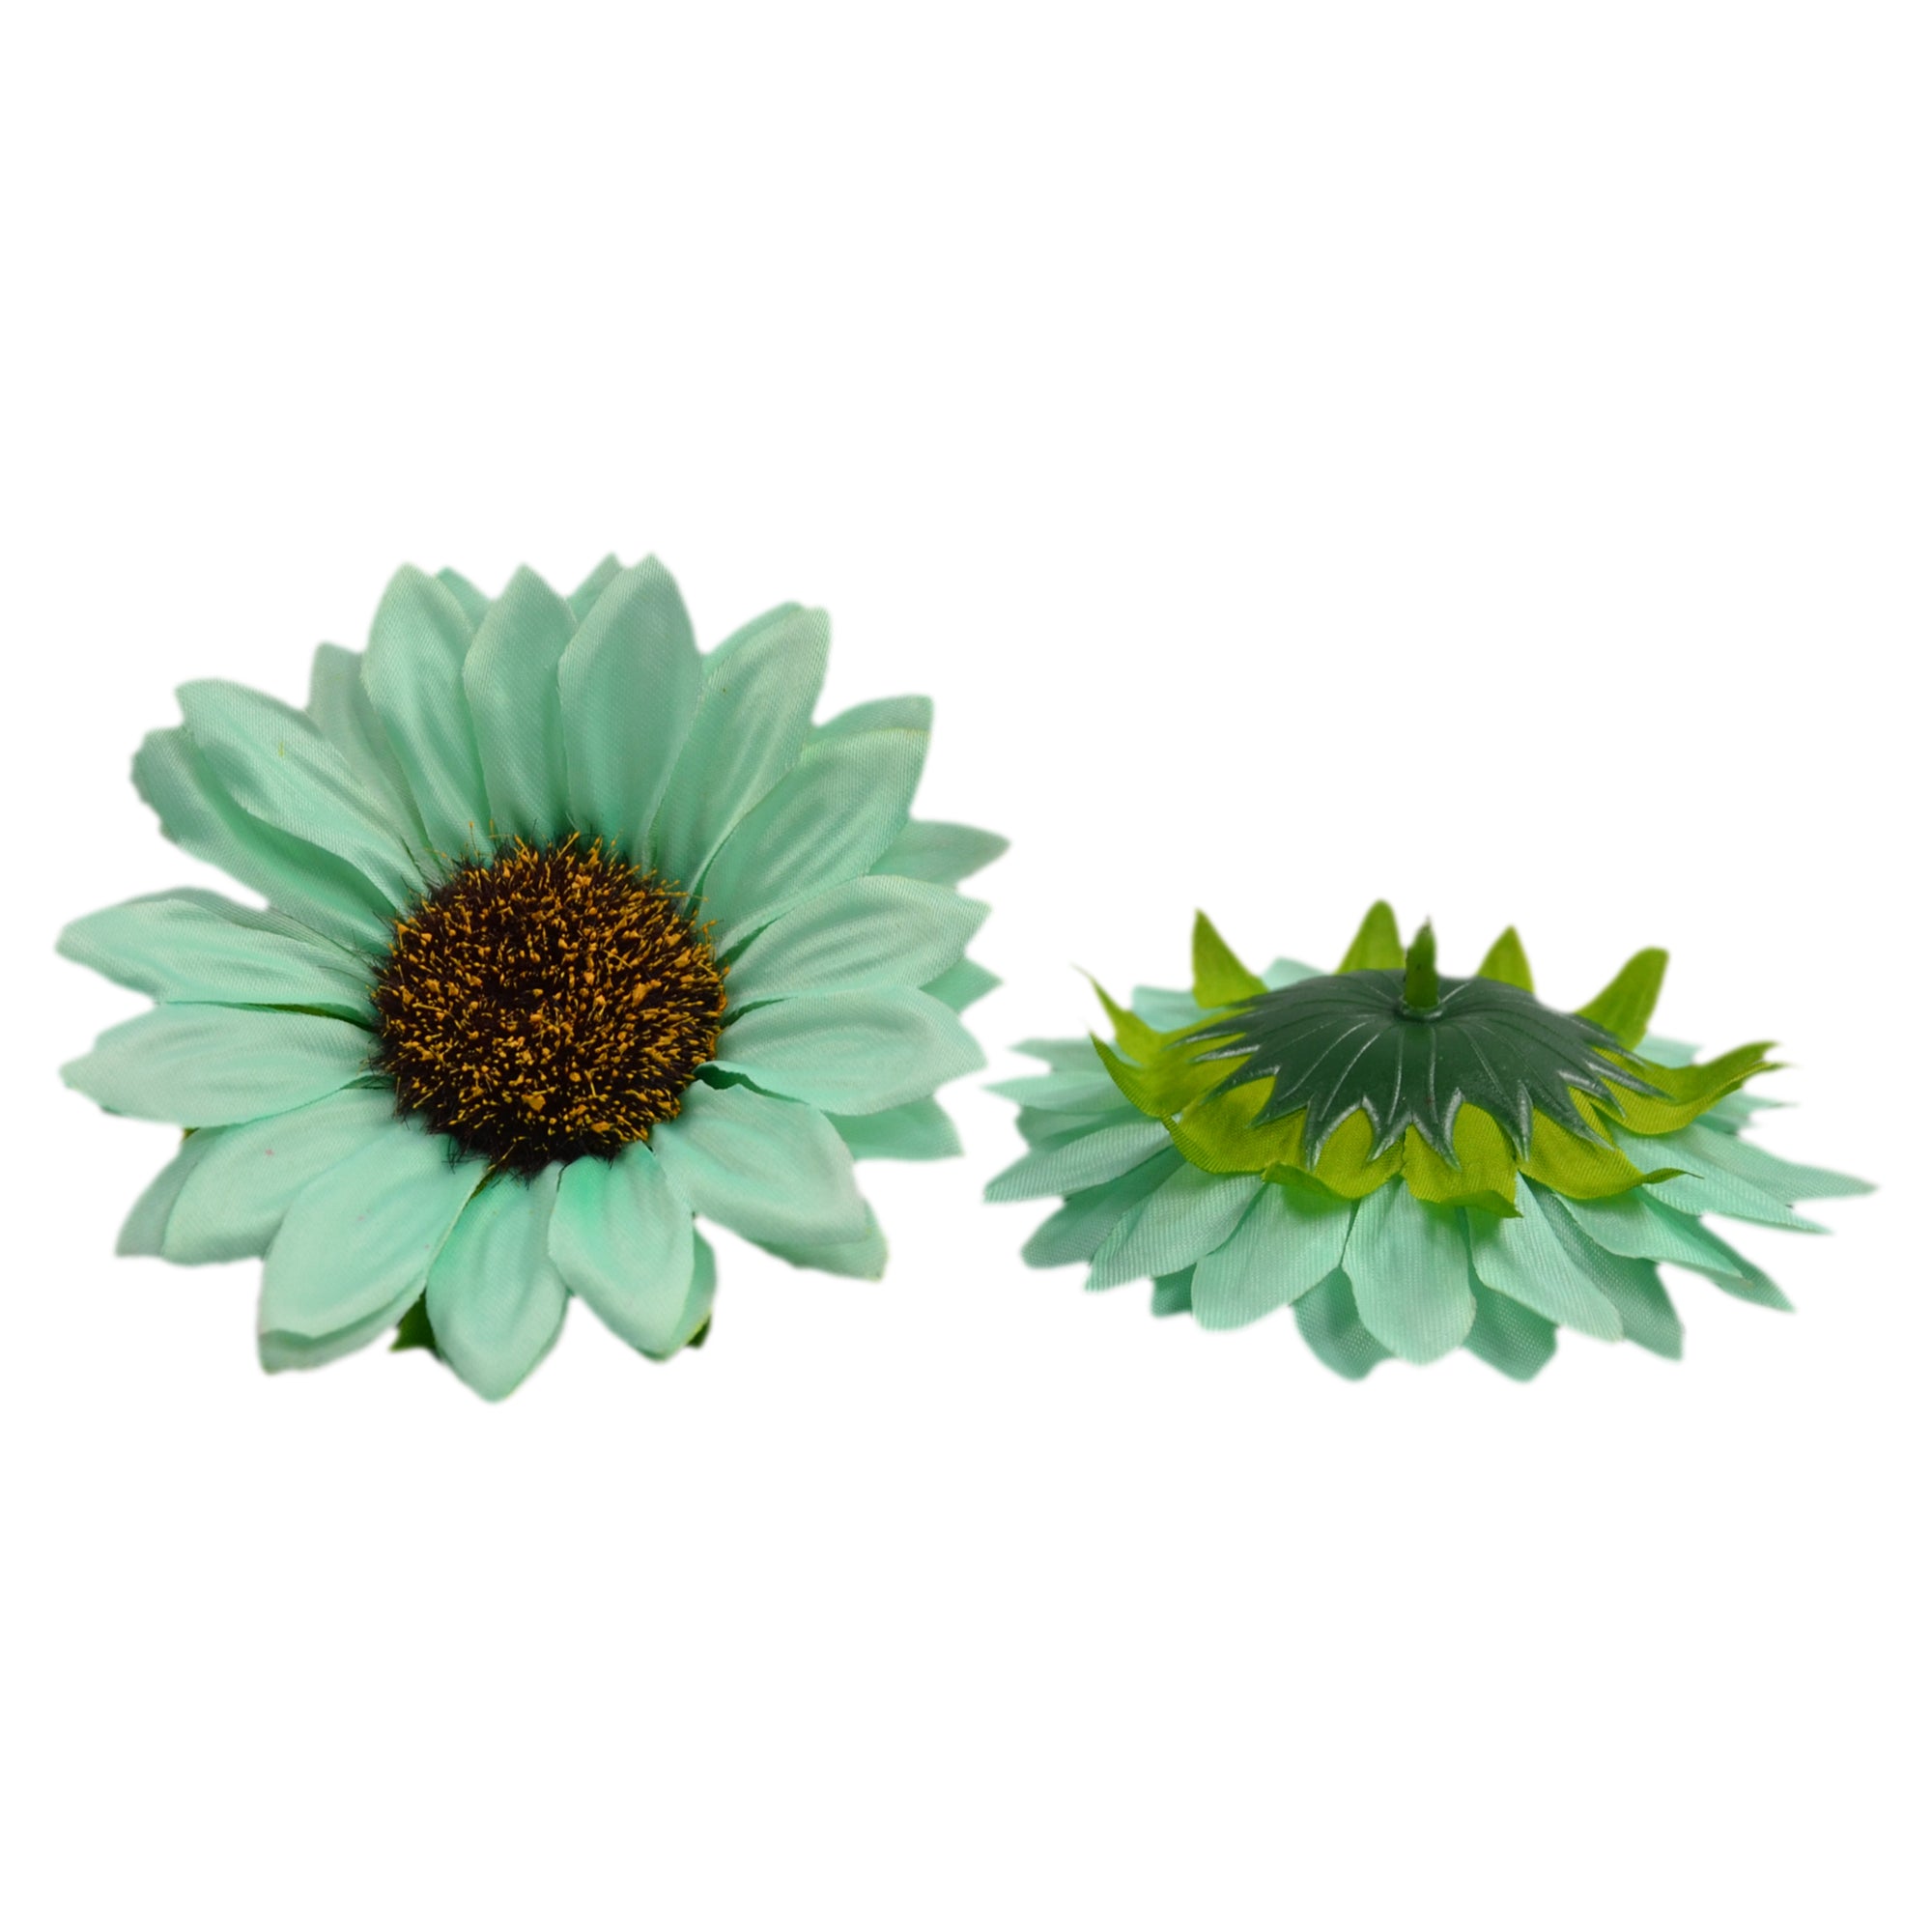 Bulk Silk Sunflowers Artificial Flowers 4"